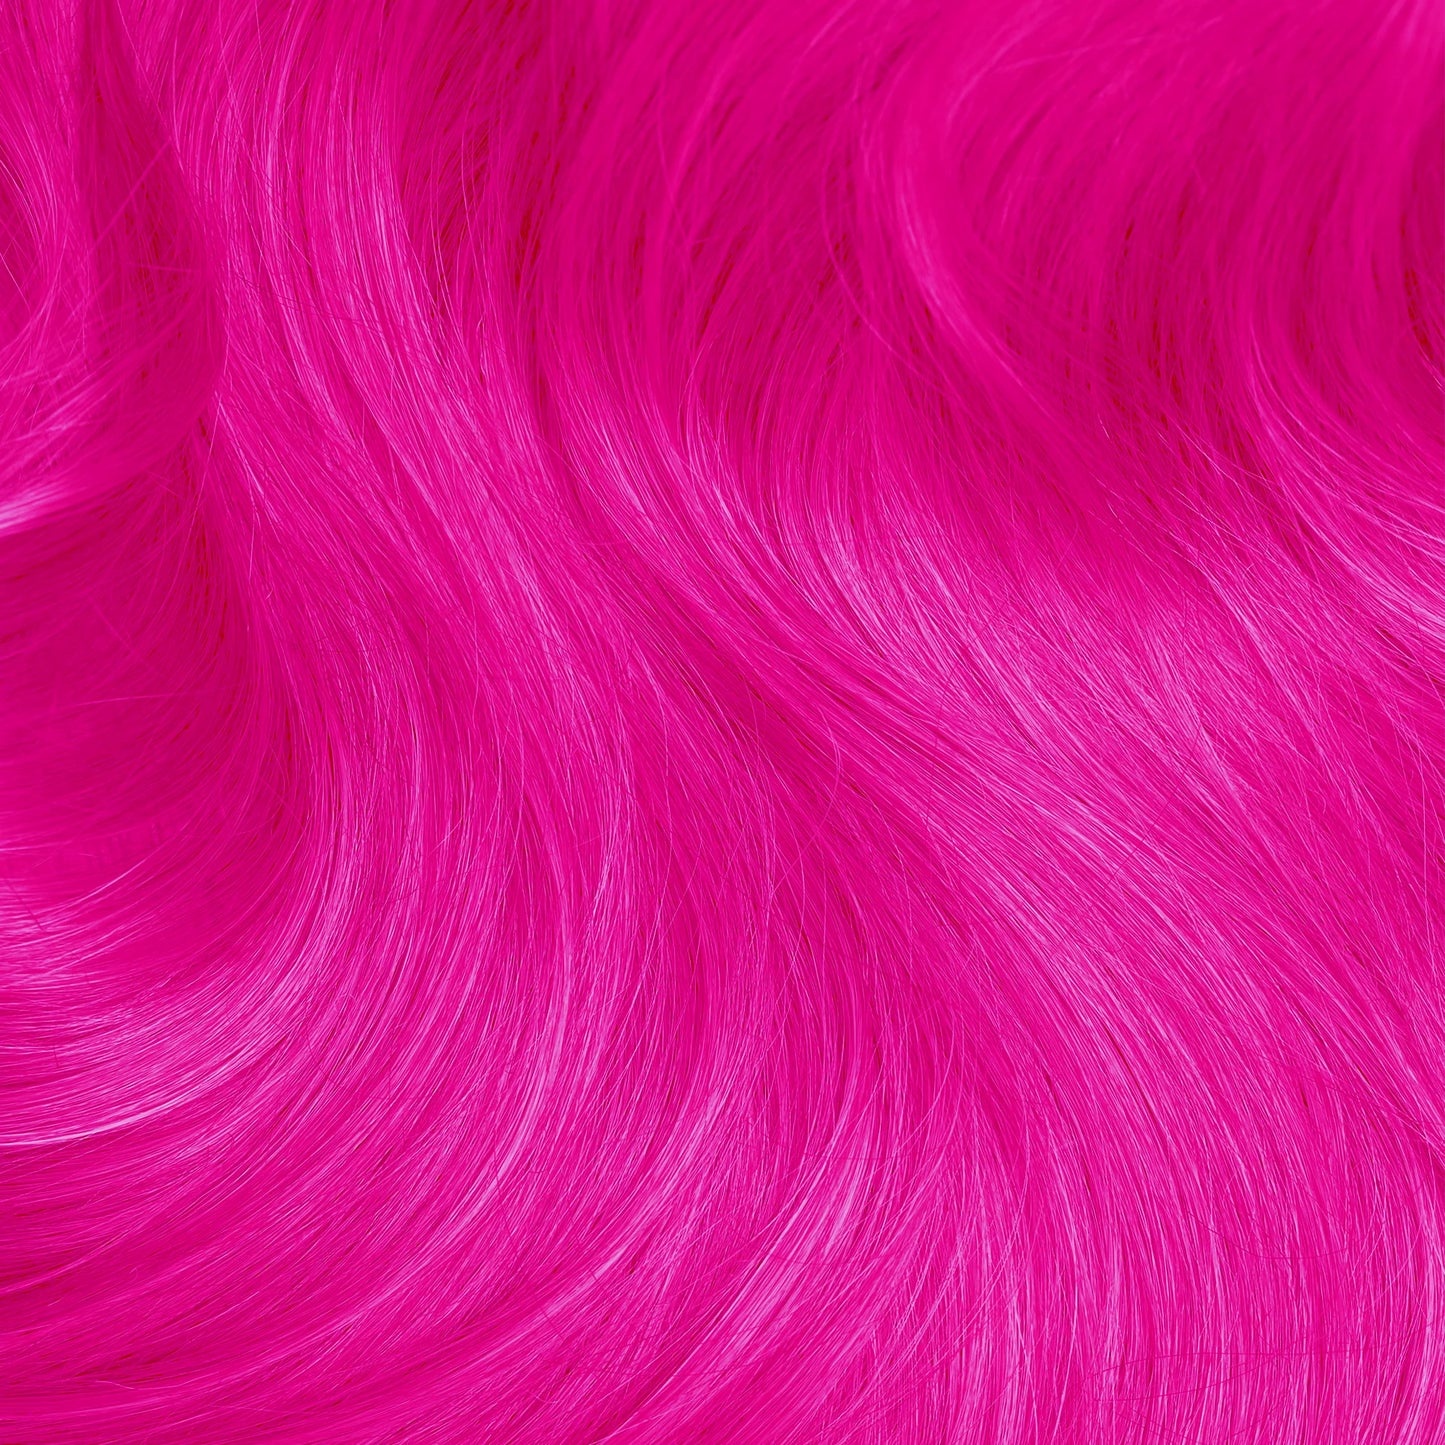 NEON DRAGONFRUIT Lunar Tides hair dye